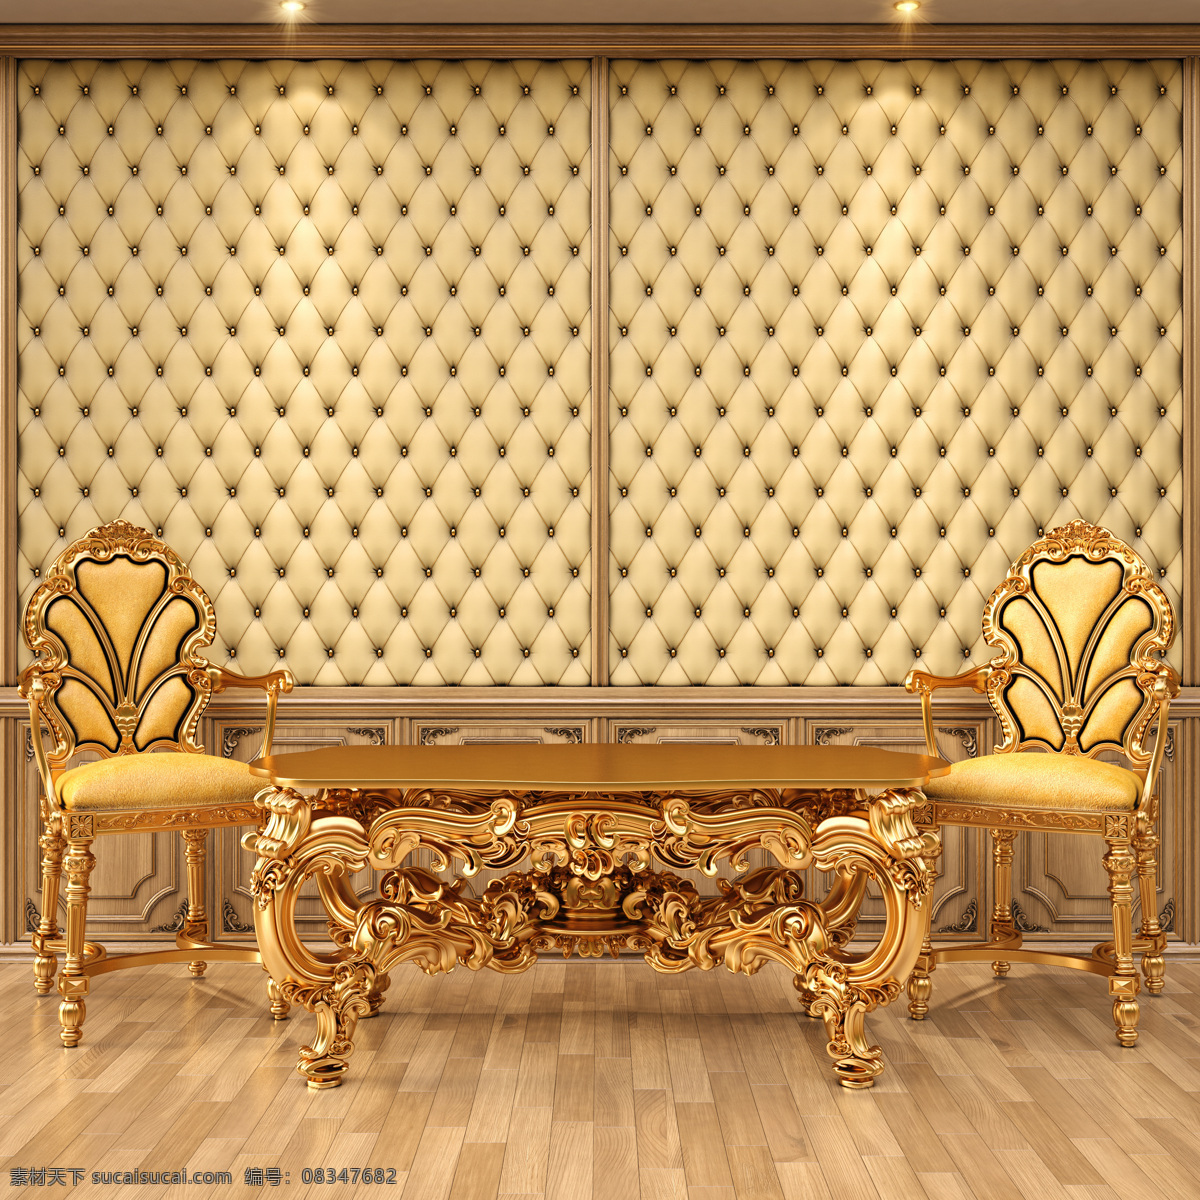 金色 椅子 桌子 金色椅子桌子 金色椅子 金色沙发 金色桌子 黄金质感 金色主题 欧式家具 金融货币 商务金融